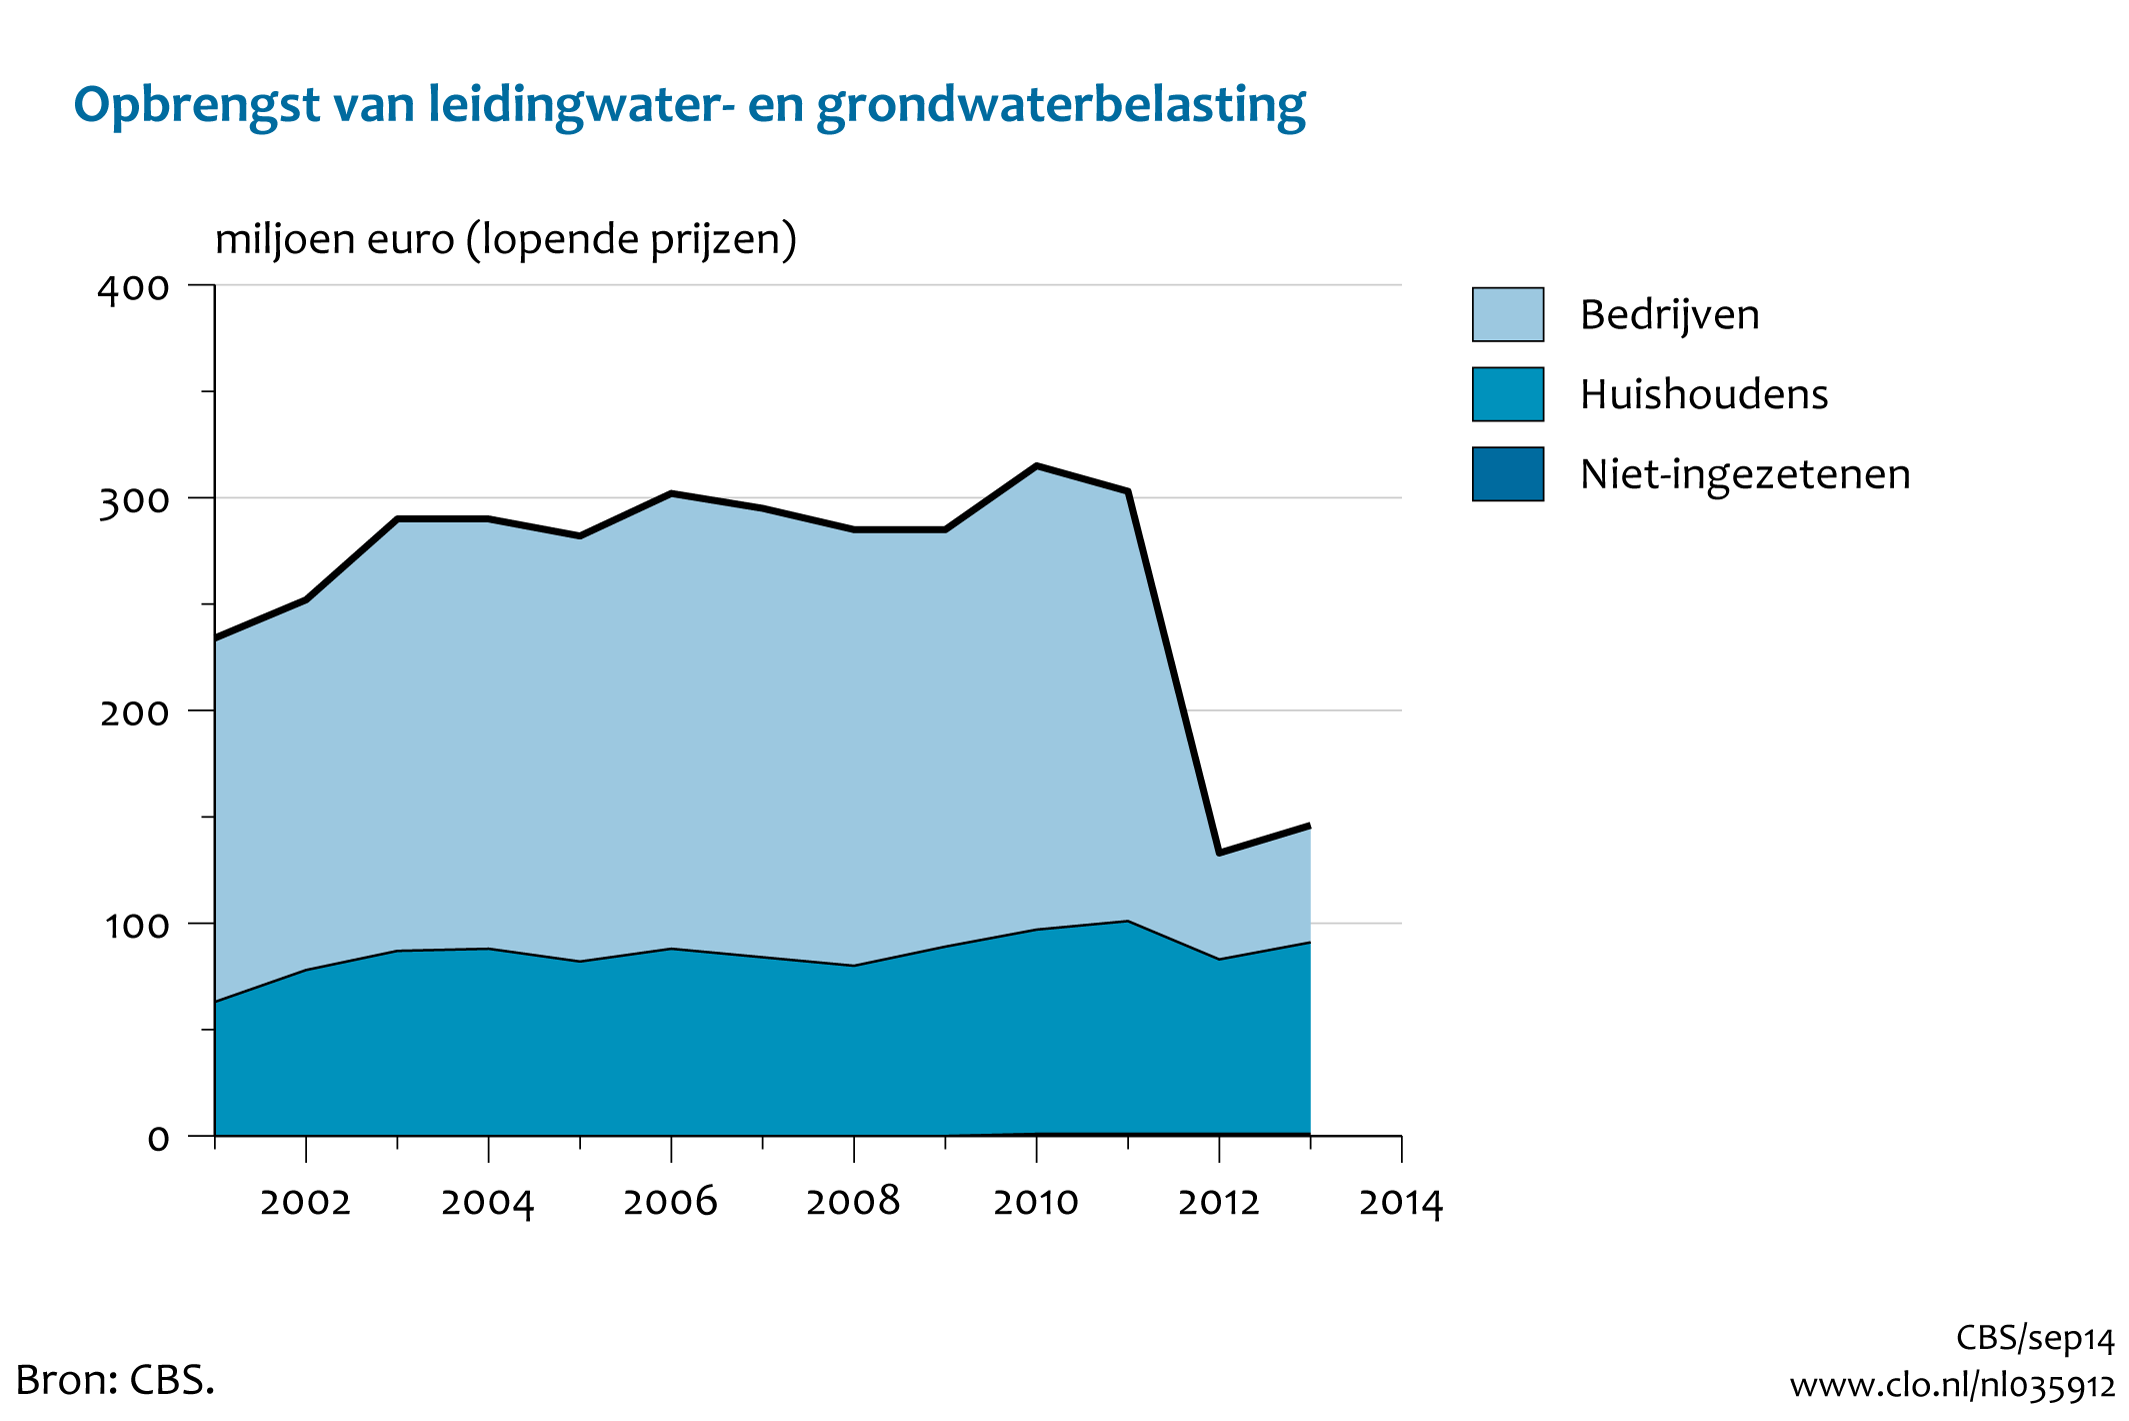 Figuur Leidingwater- en grondwaterbelasting. In de rest van de tekst wordt deze figuur uitgebreider uitgelegd.